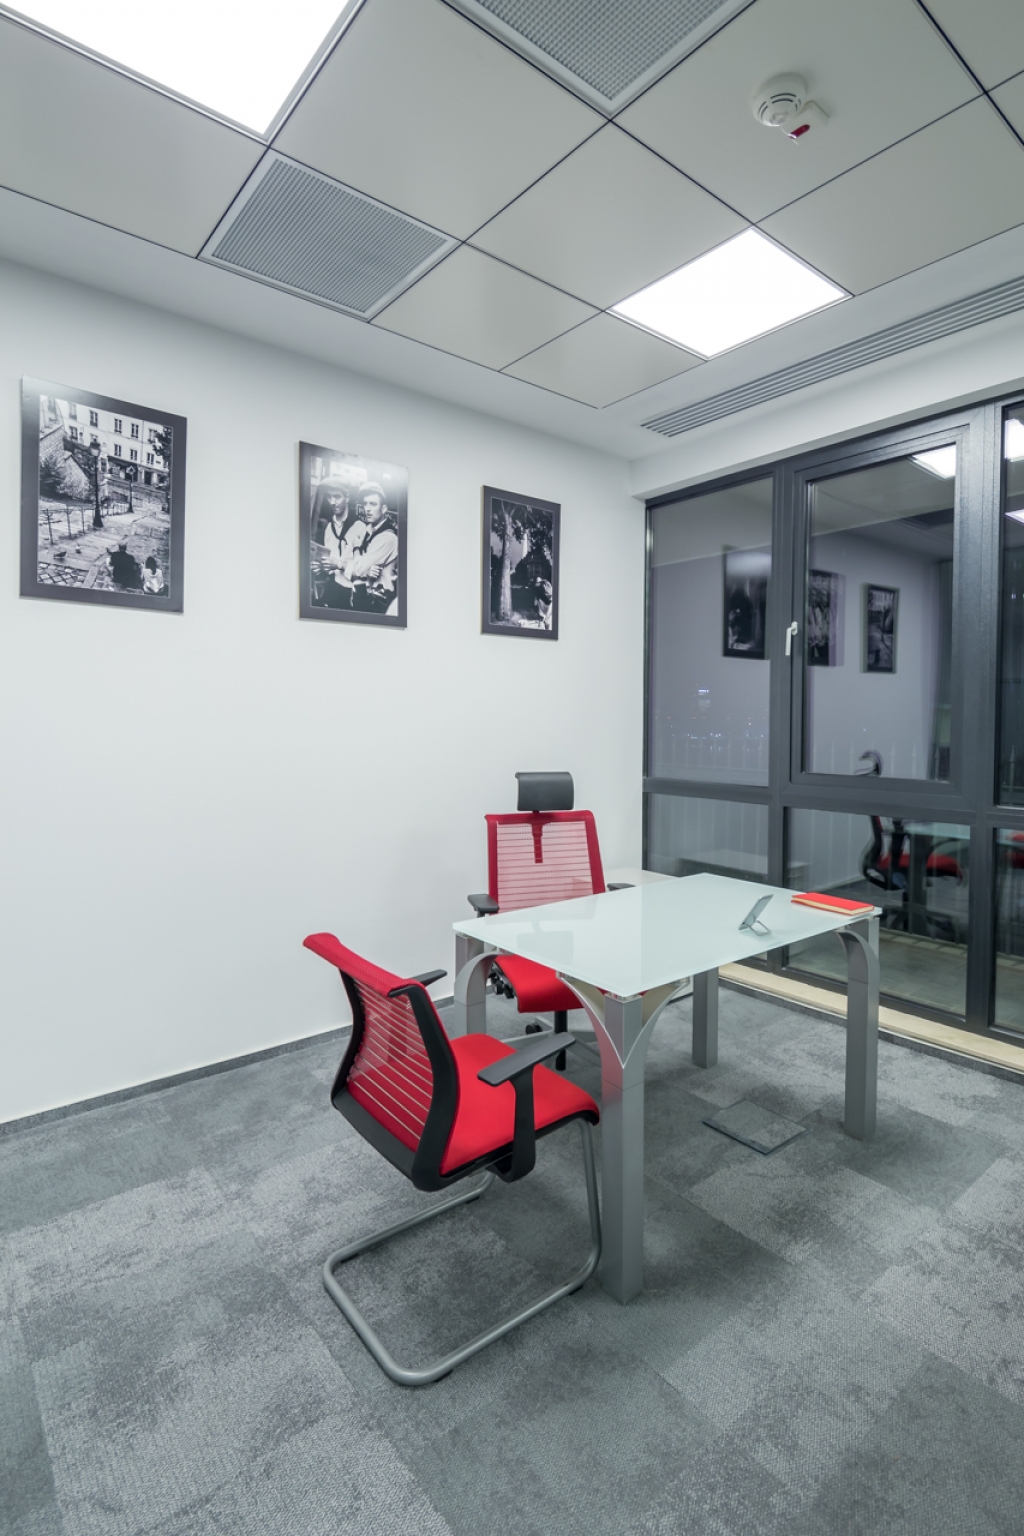 Camera Franceza de Comert si Industrie s-a mutat in casa noua: cum arata noul sediu